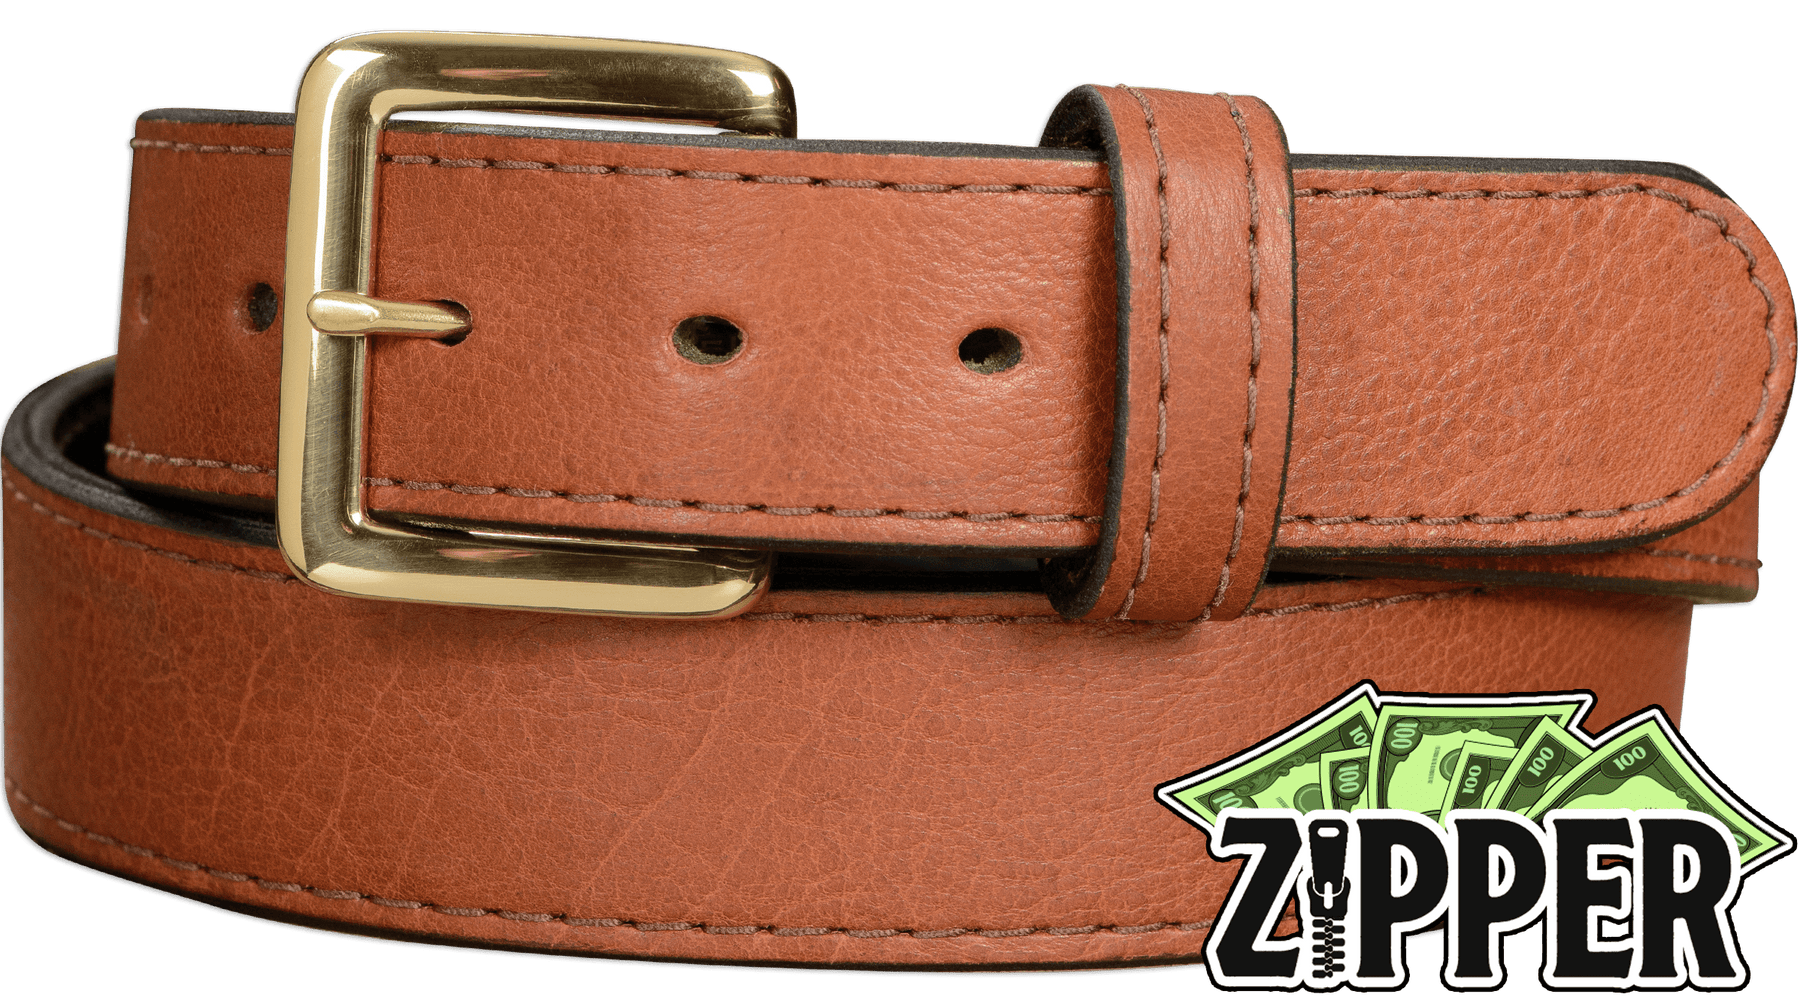 Brown American Bison Money Belt With 25 Zipper –